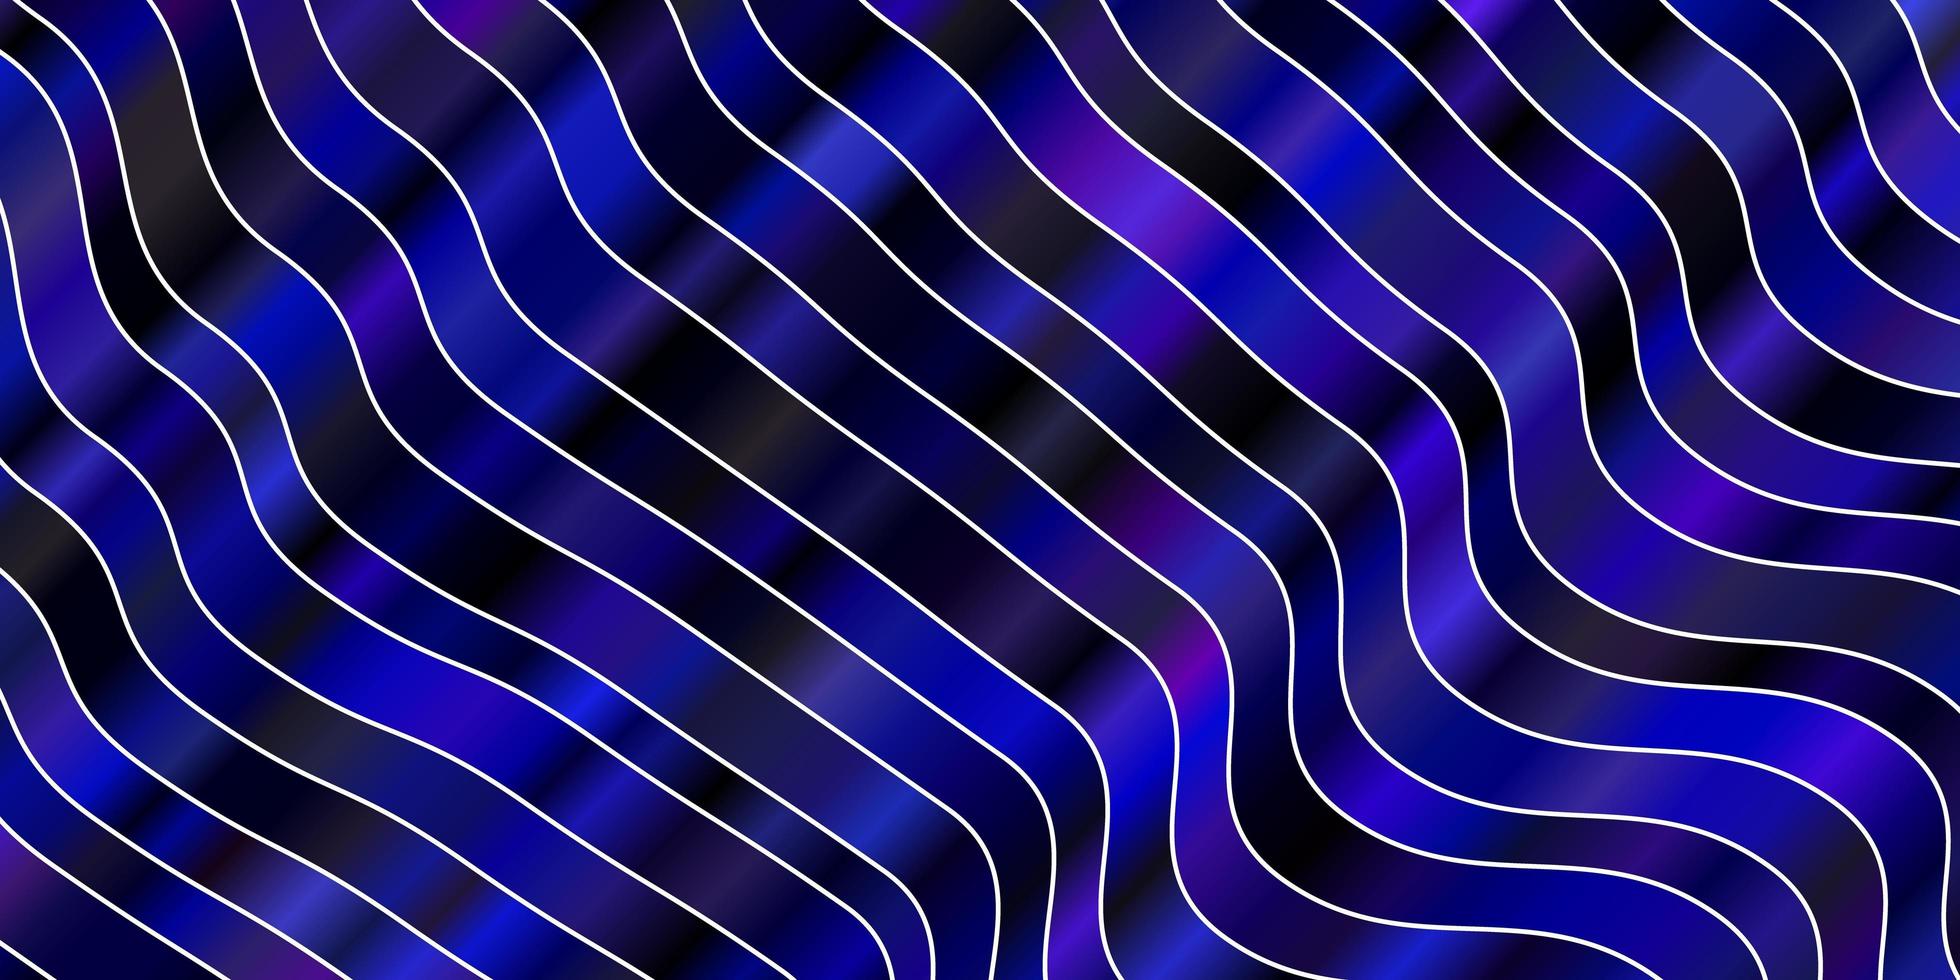 mörkrosa blå vektor layout med kurvor abstrakt lutning illustration med snygga linjer mönster för webbplatser målsidor